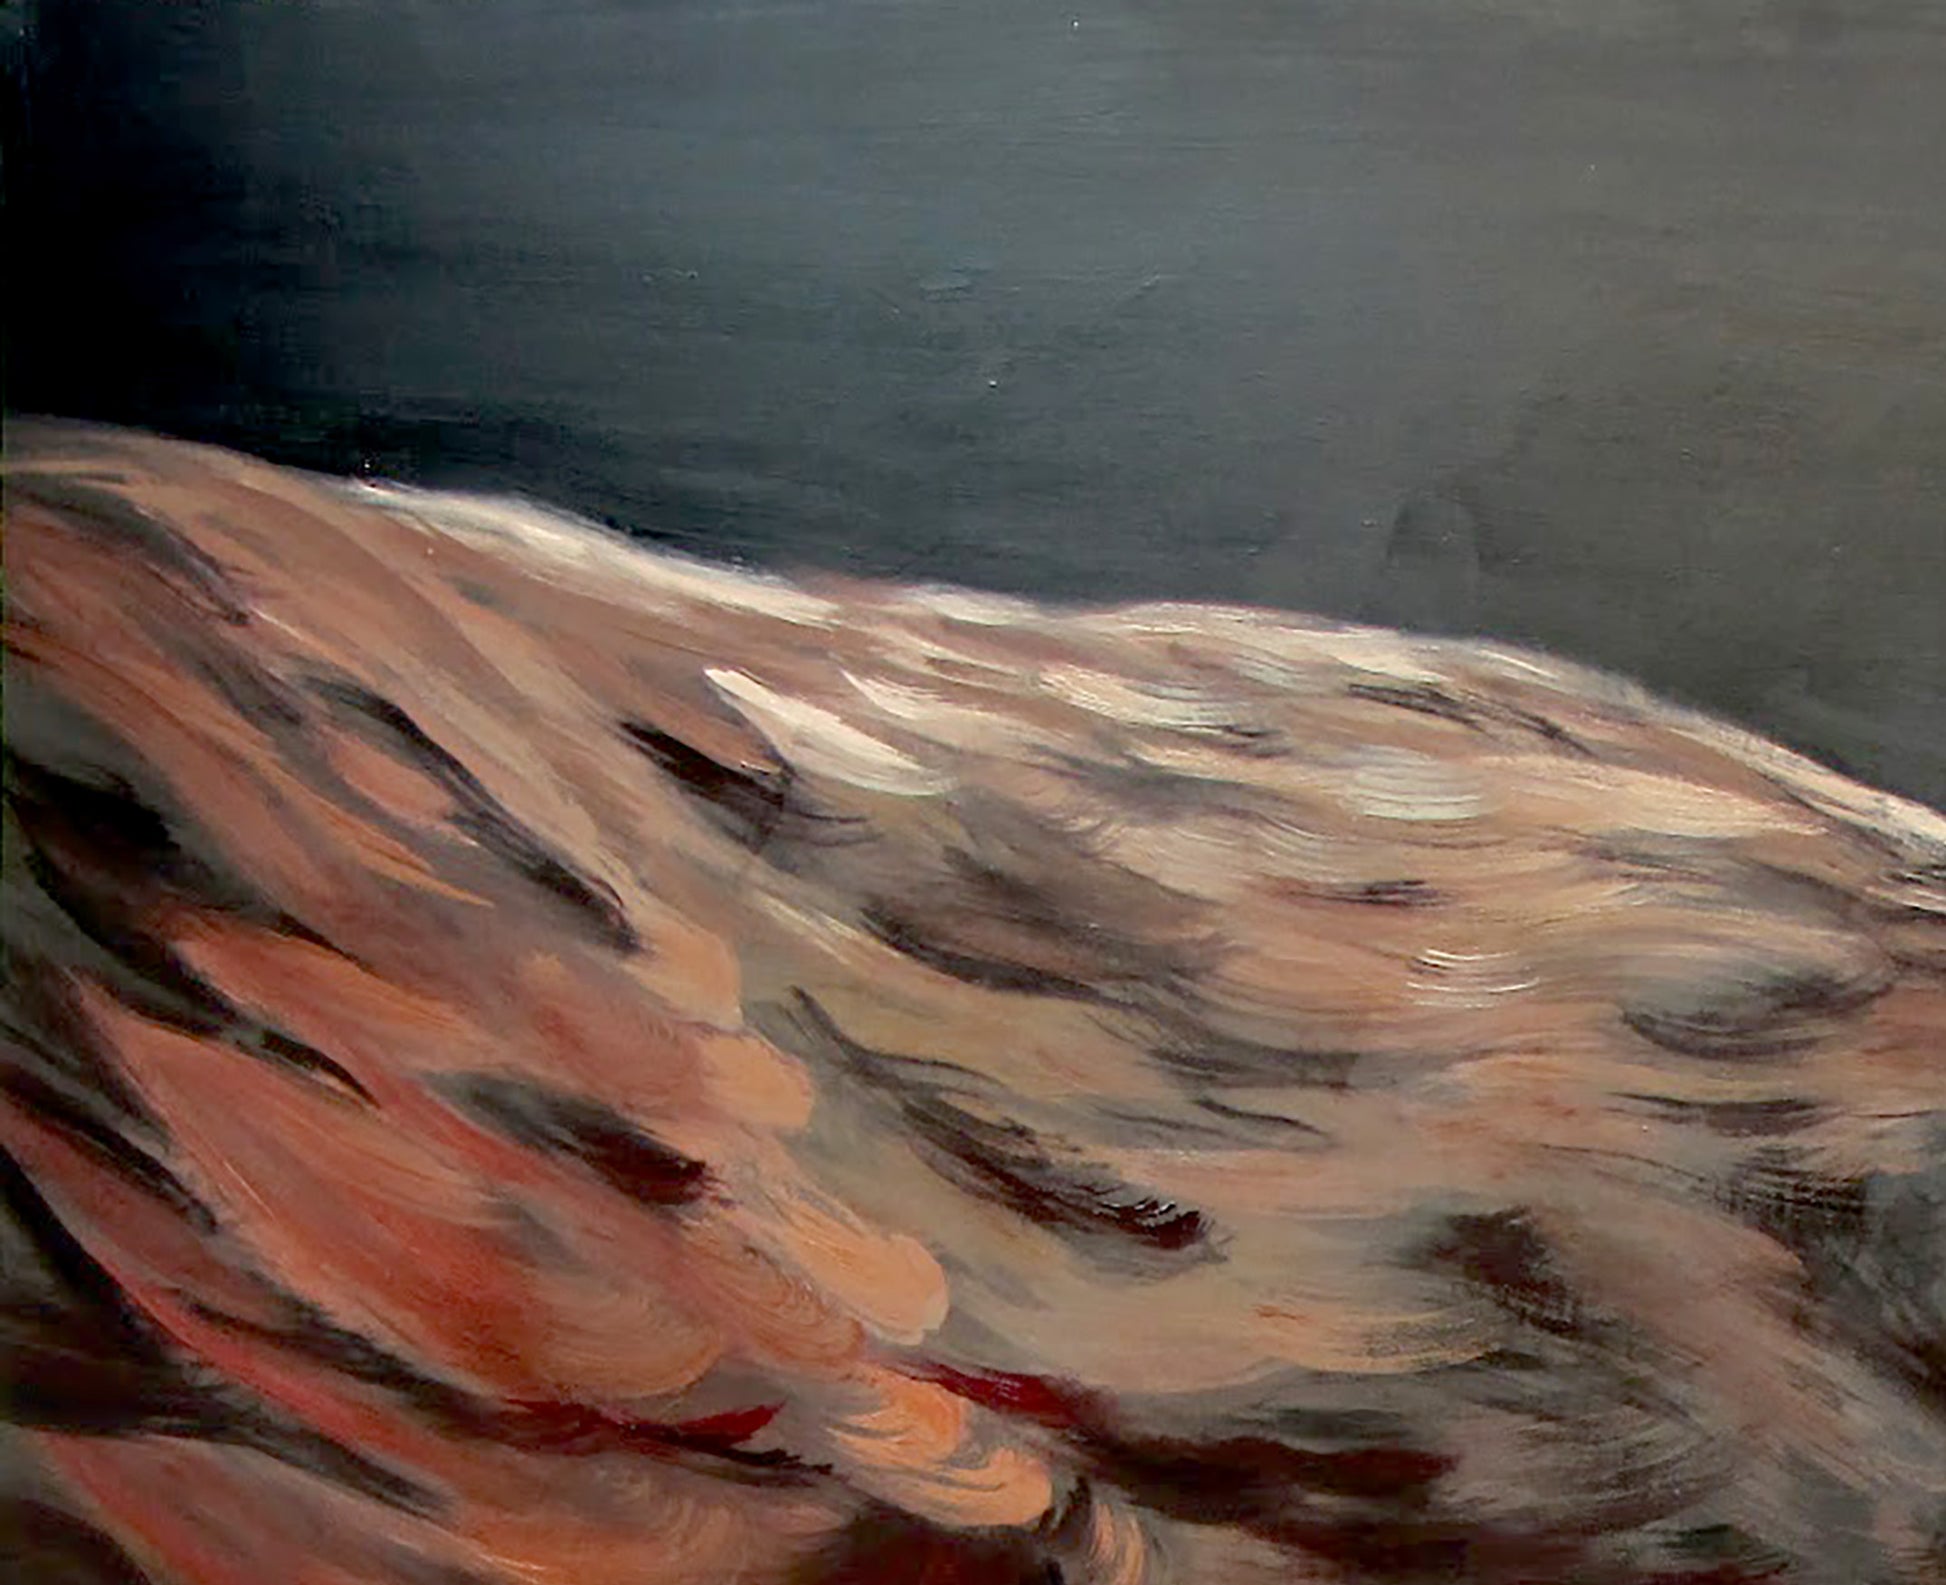 Igor Konovalov's oil painting capturing an "Eagle"